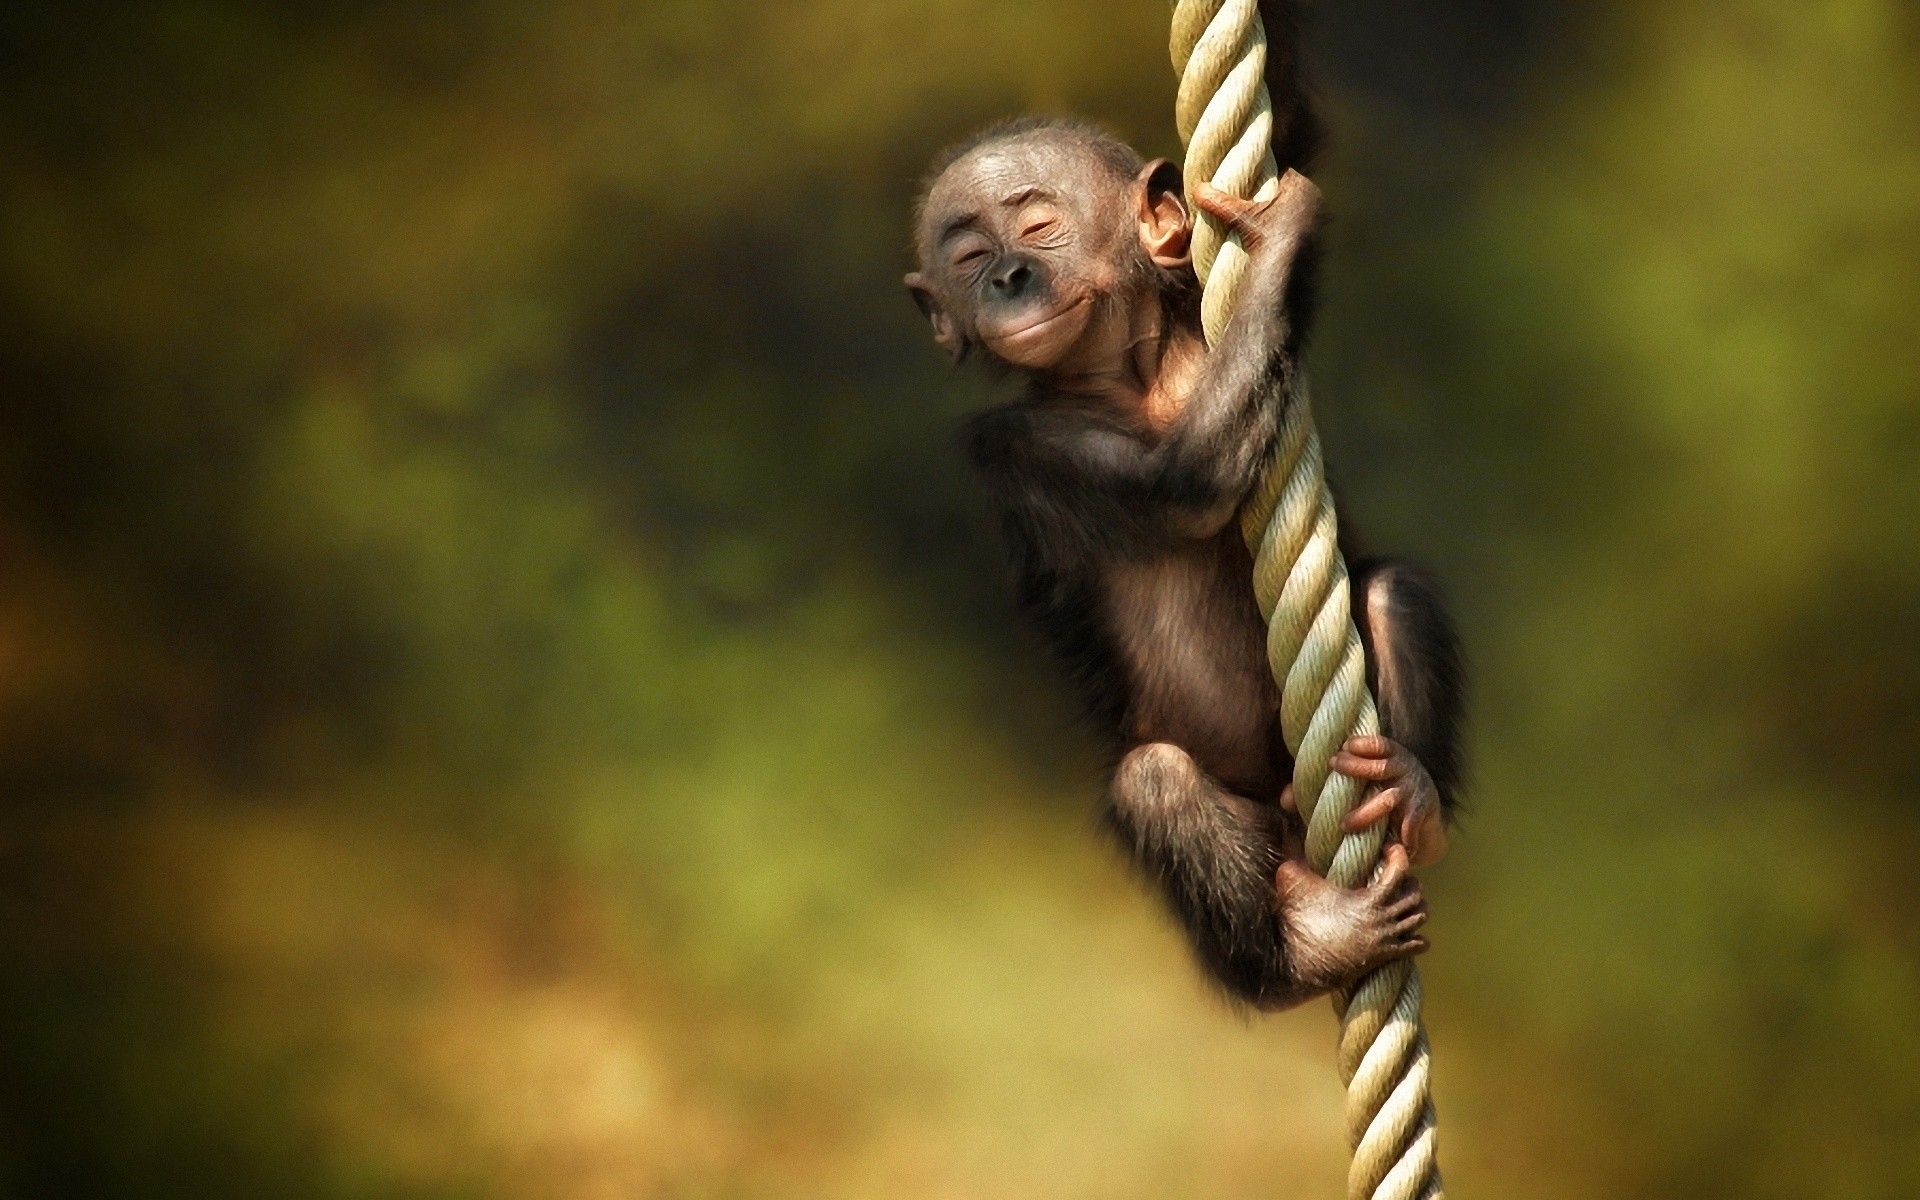 Cute Monkey Wallpaper HD